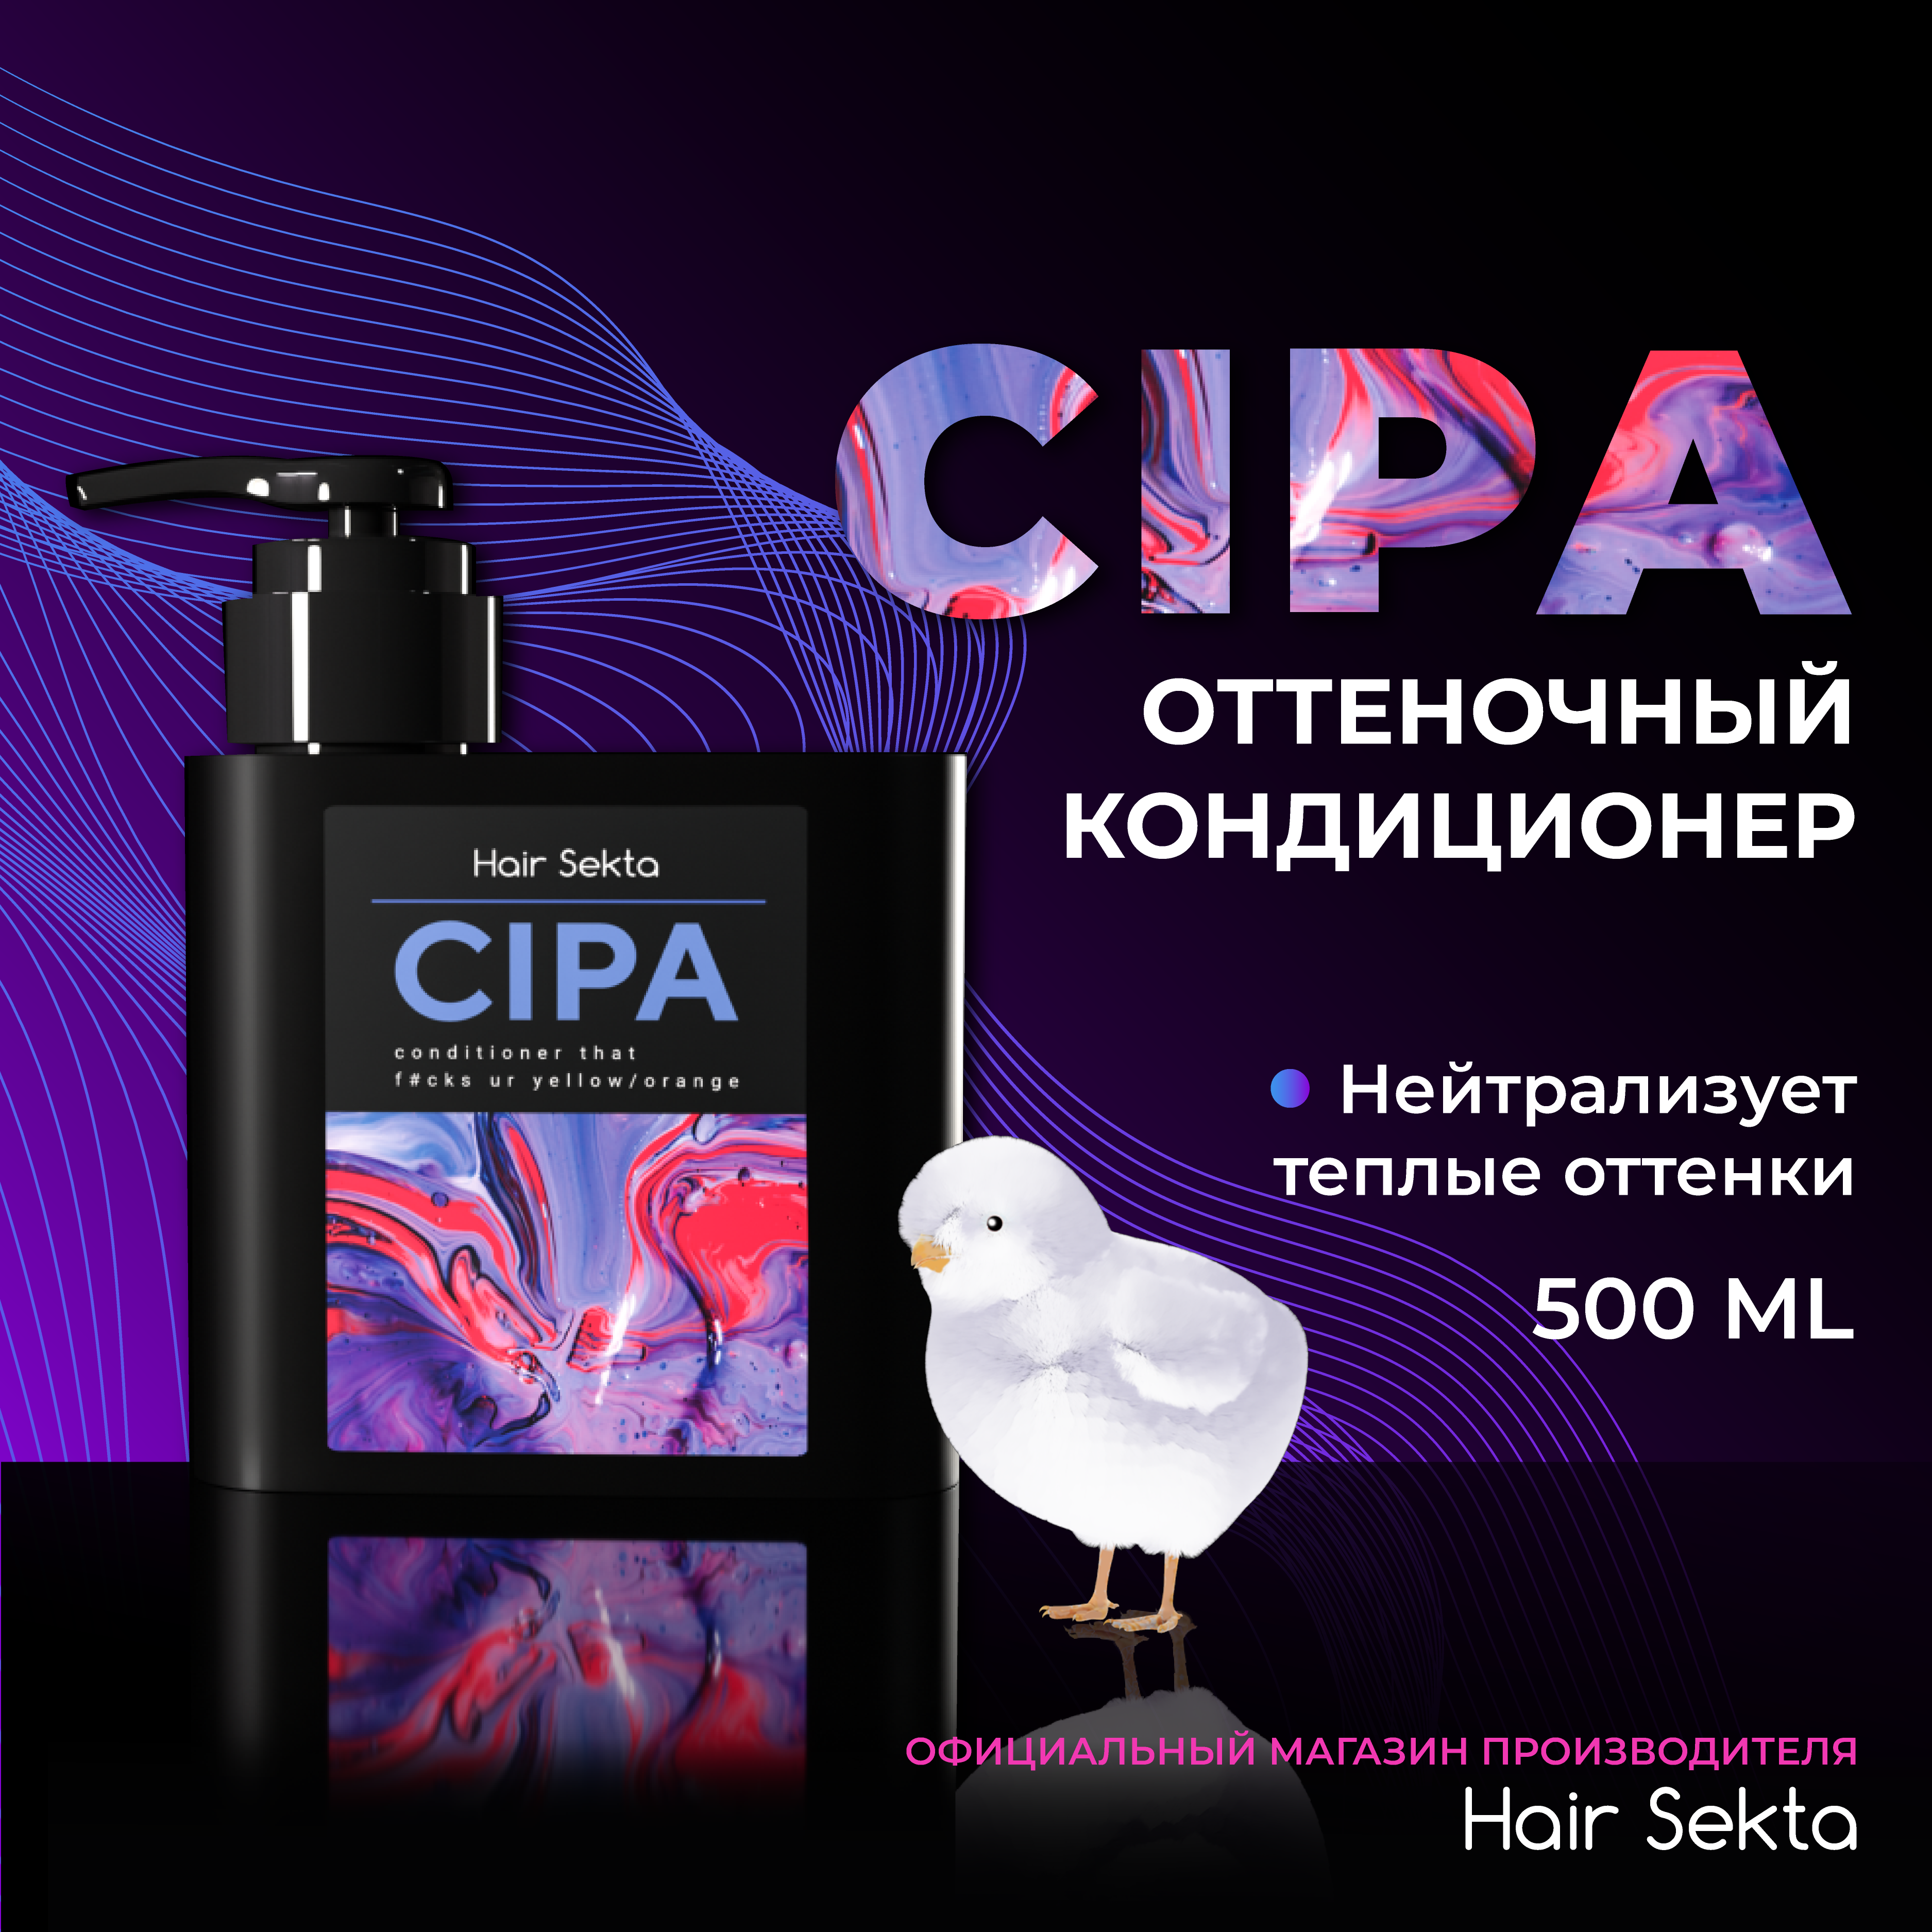 Кондиционер для волос Hair Sekta Cipa оттеночный, 500 мл слайм перламутровый оранжевый 100 г